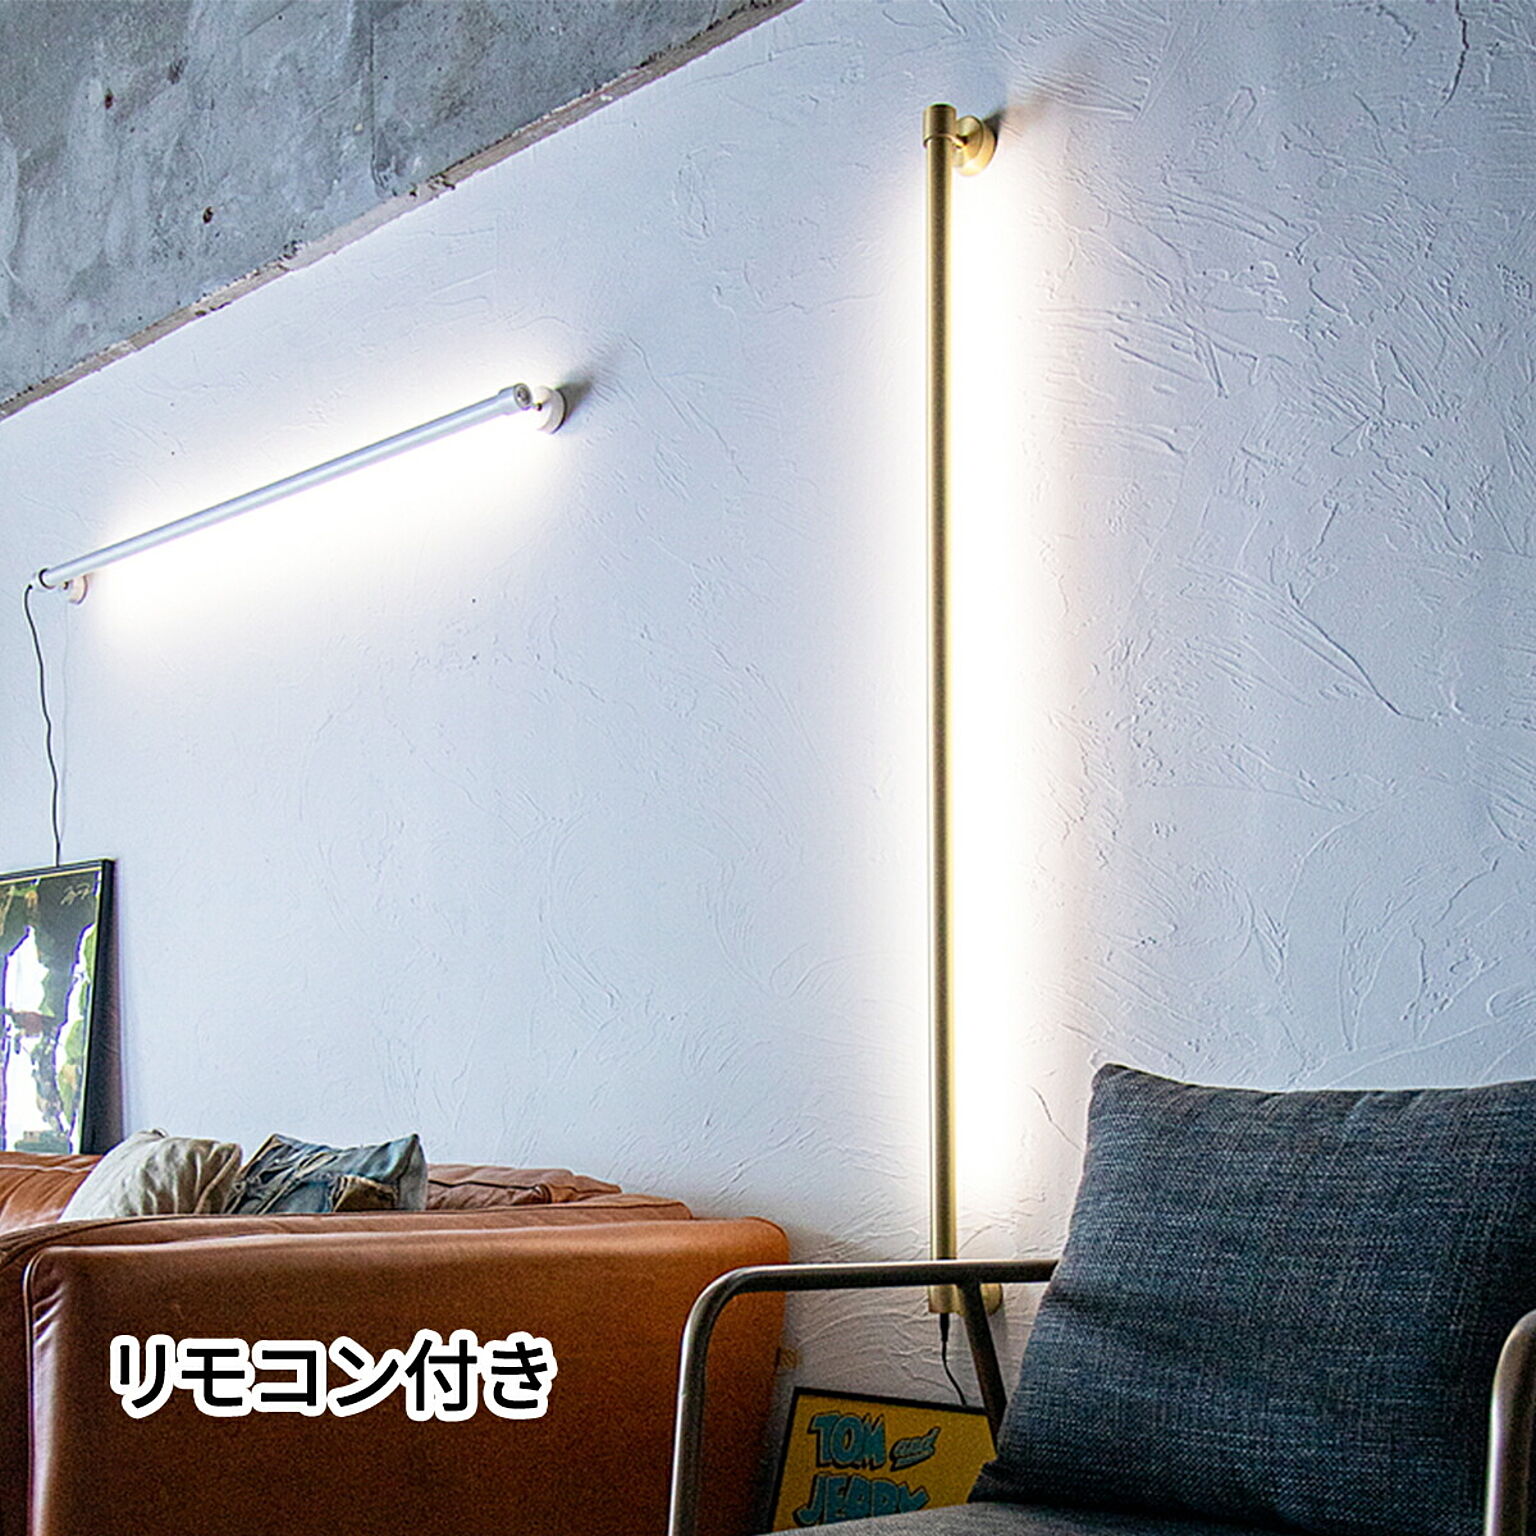 LED バーライト ウォールライト ネオマンクス  壁付けライト 間接照明 リモコン付き スタイリッシュ おしゃれ シンプル ホワイト ブラック 寝室 真鍮 ブロス Smart Life対応 TC-2